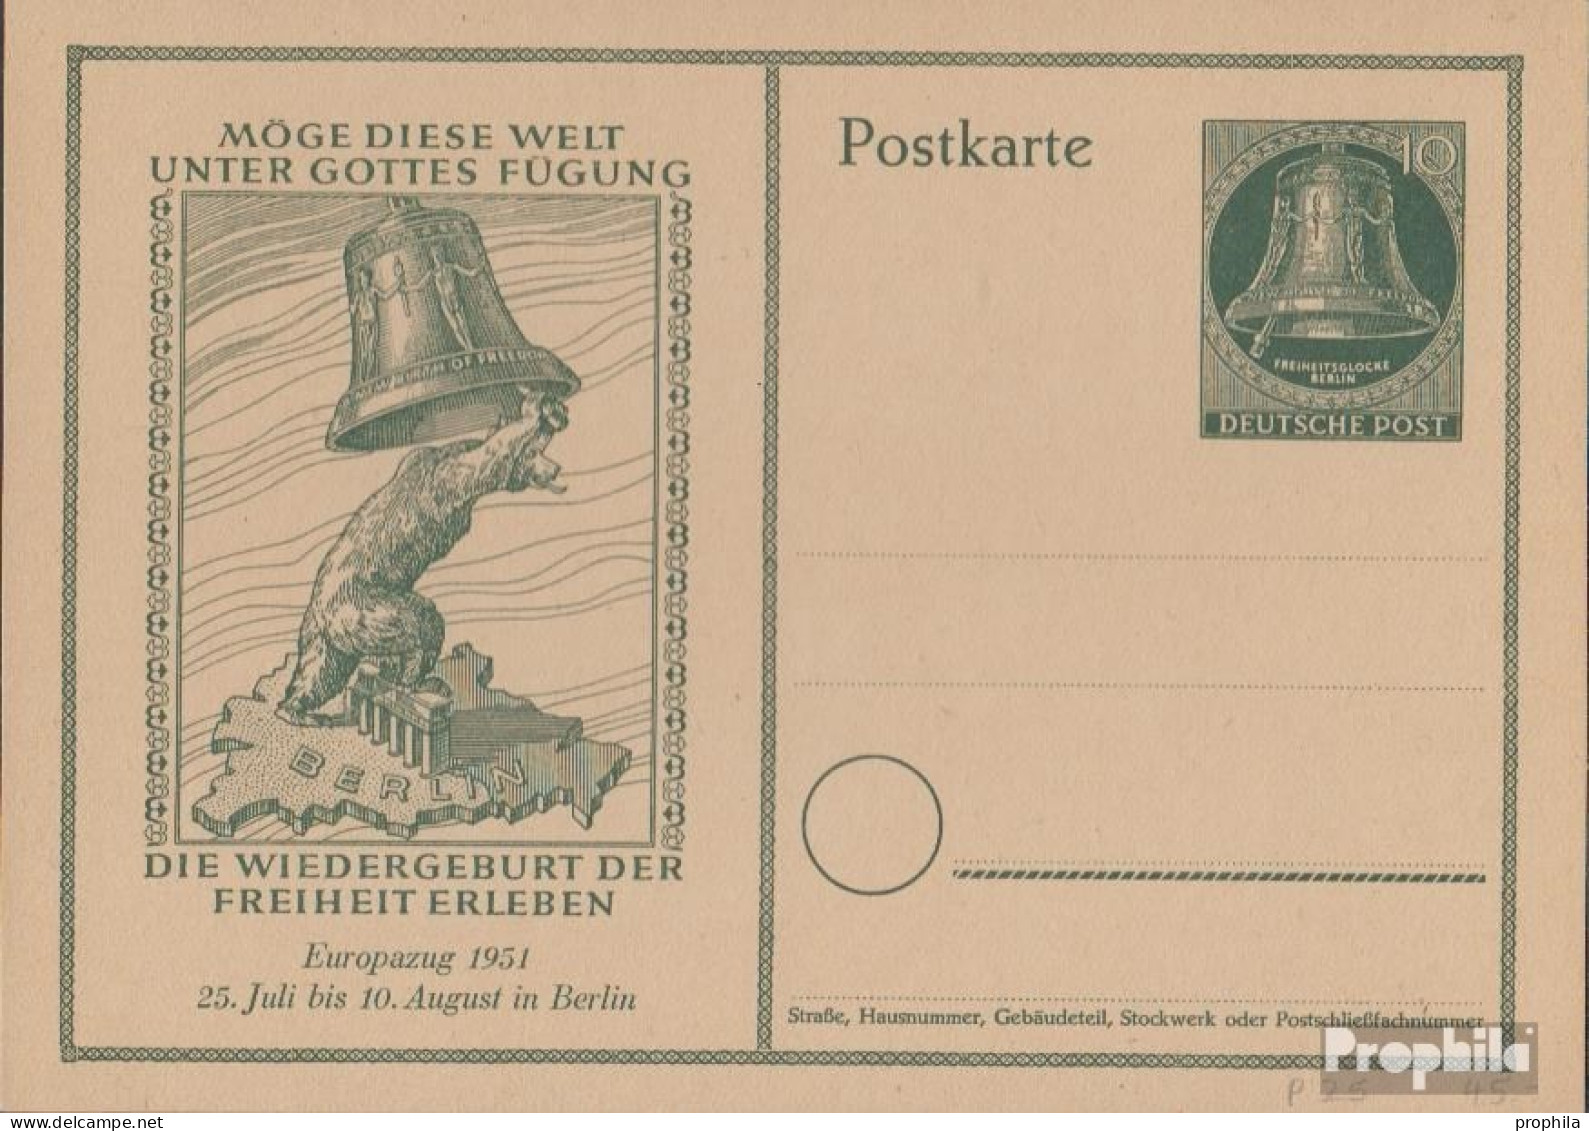 Berlin (West) P25 Amtliche Postkarte Gefälligkeitsgestempelt Gebraucht 1951 Glocke - Postkarten - Gebraucht